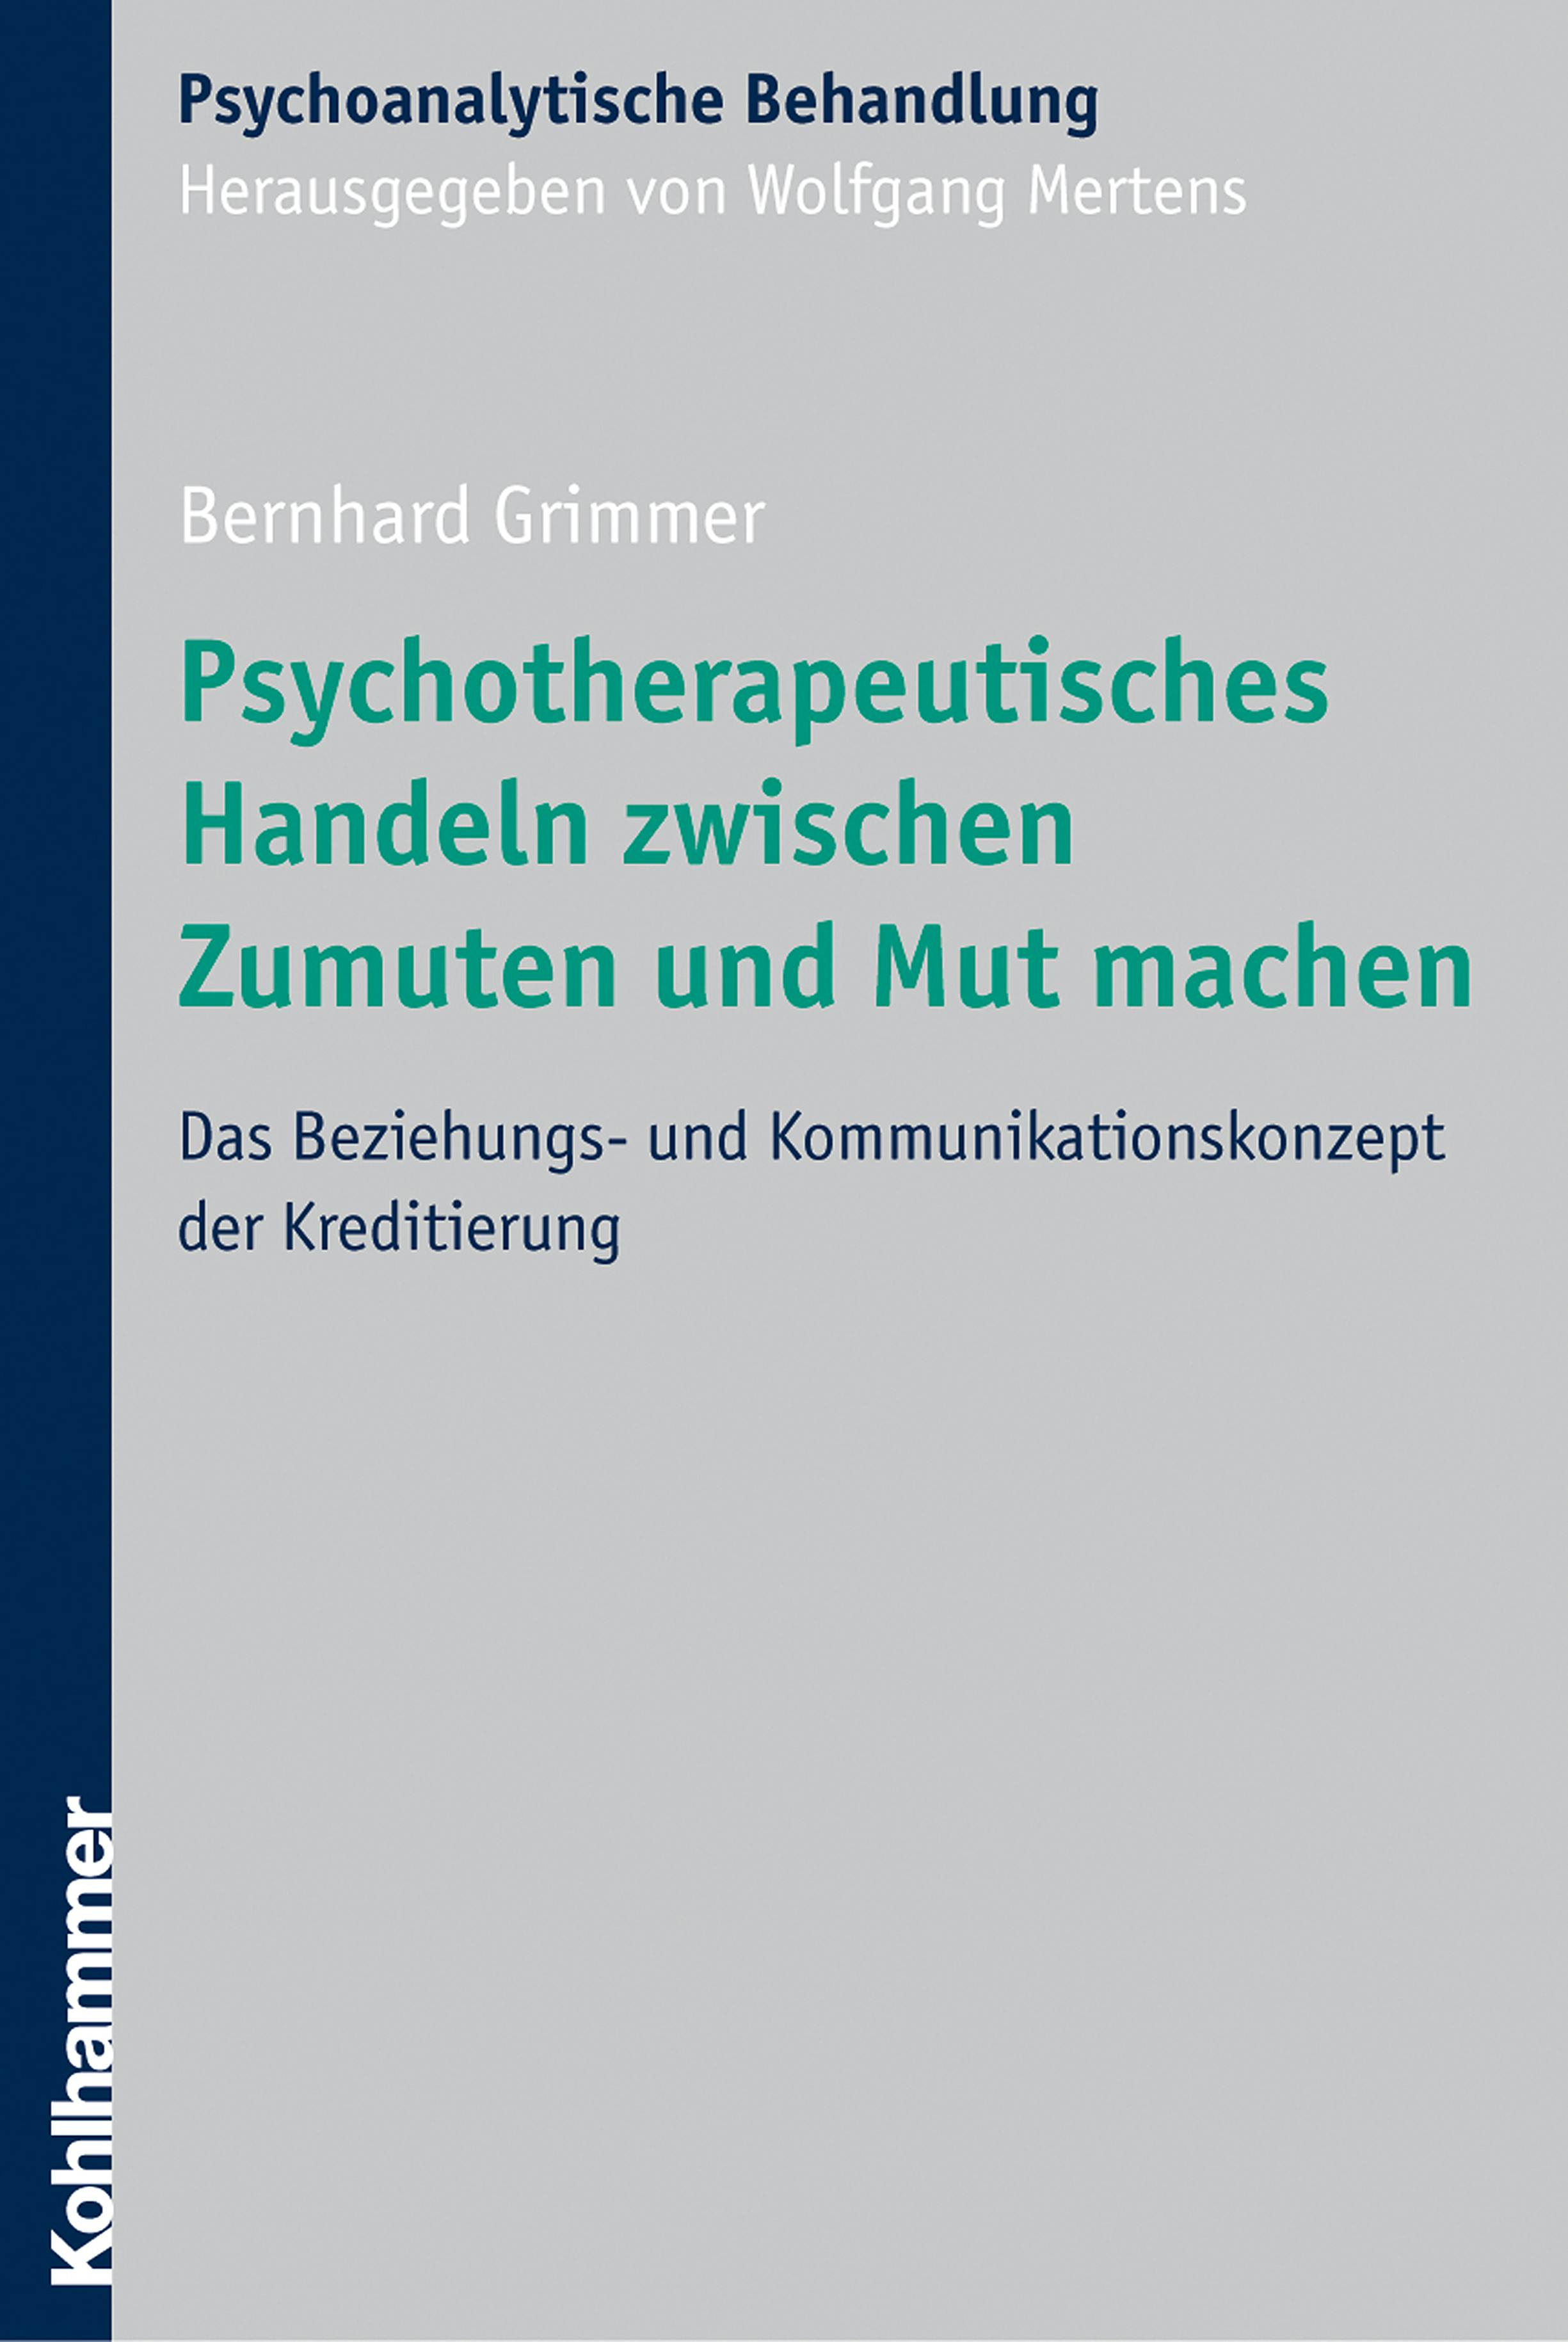 Psychotherapeutisches Handeln zwischen Zumuten und Mut machen: Das Beziehungs- und Kommunikationskonzept der Kreditierung - Bernhard Grimmer